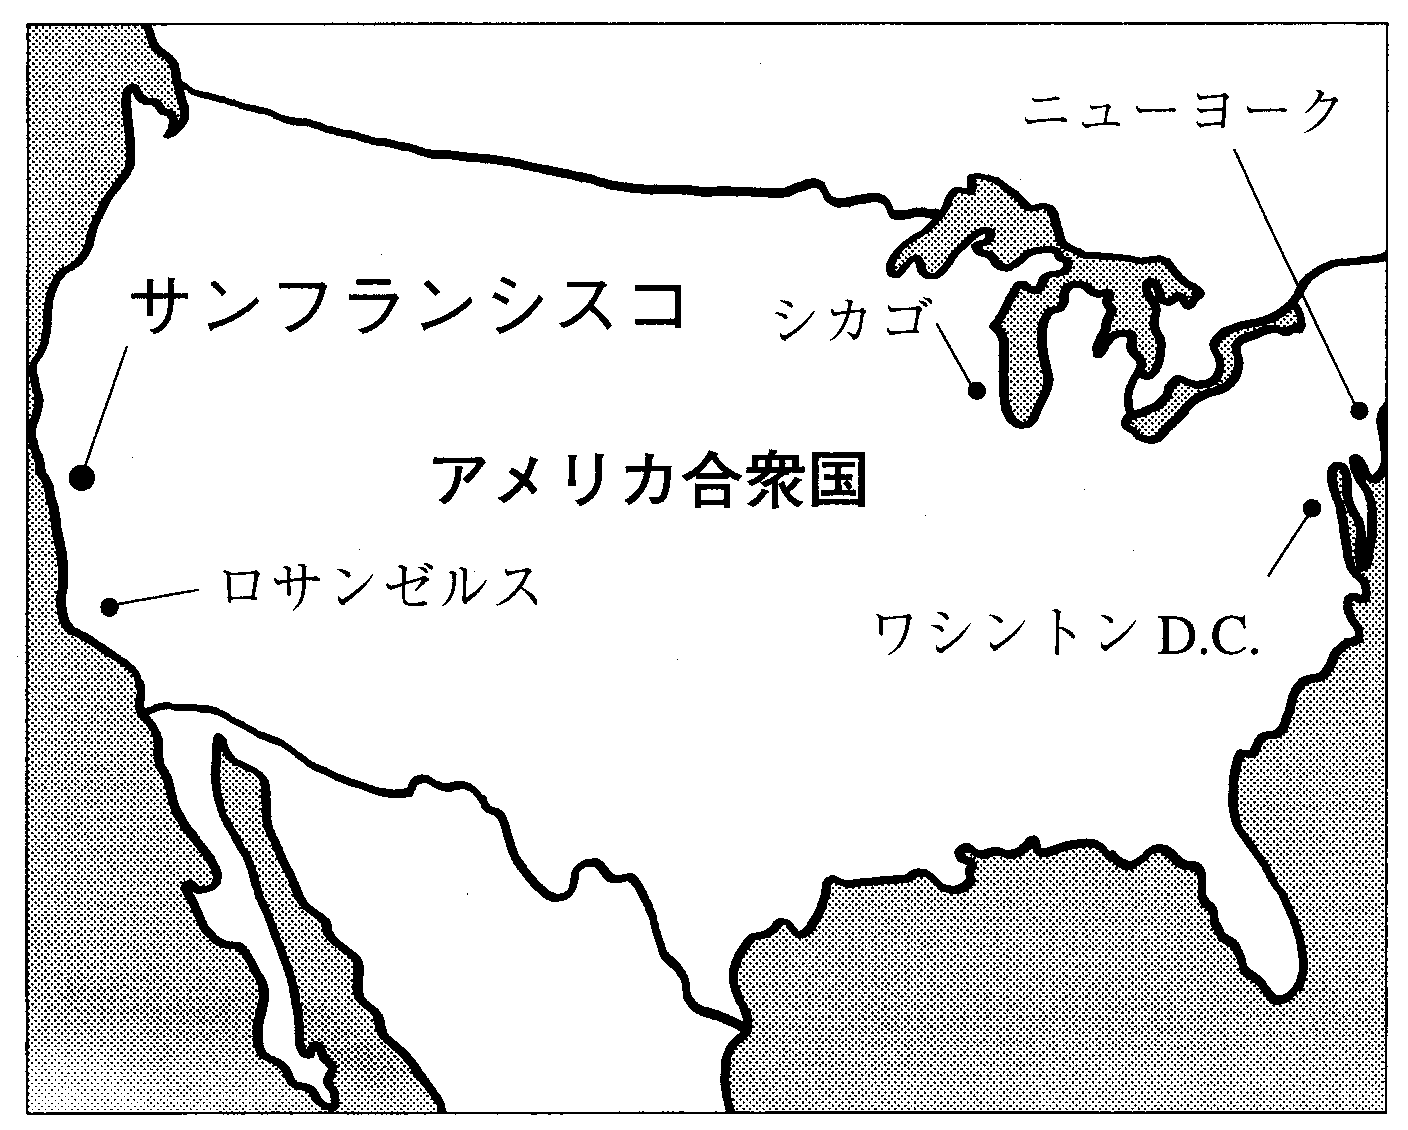 アメリカ地図